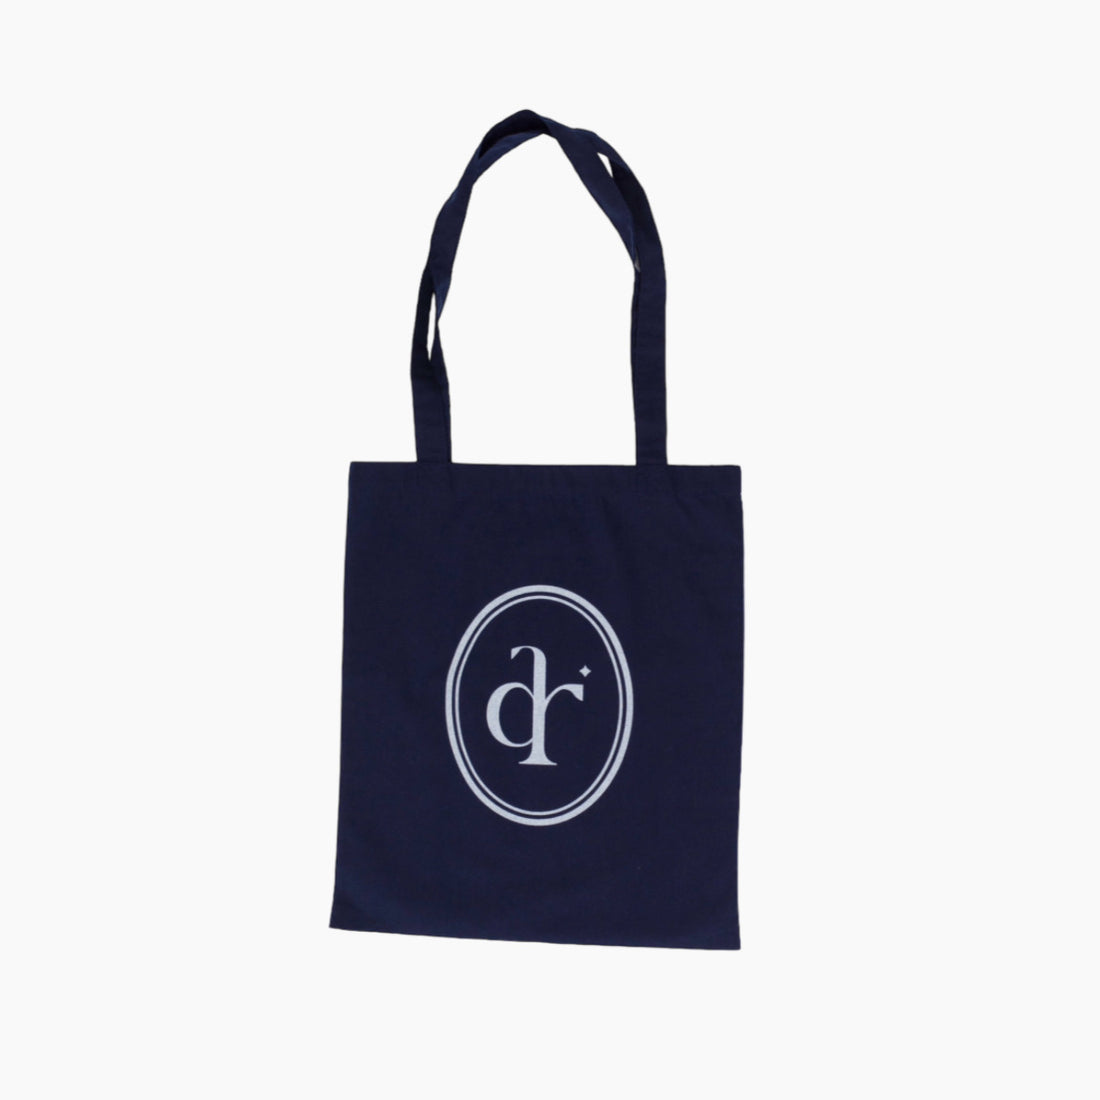 dr Logo Tote Bag